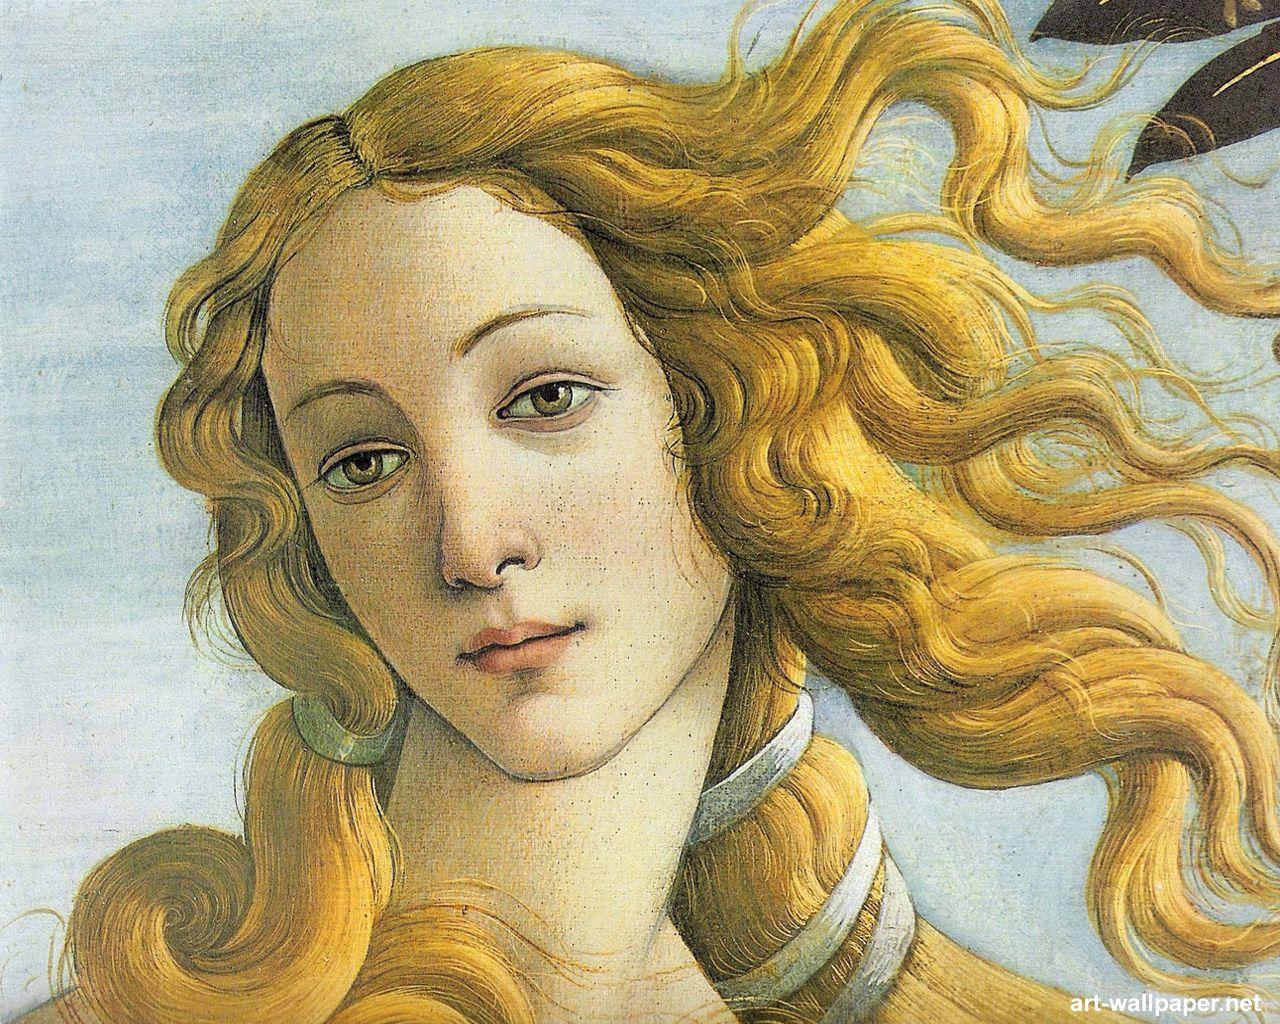 Image detail for -Sandro Botticelli Wallpaper, Painting Wallpaper